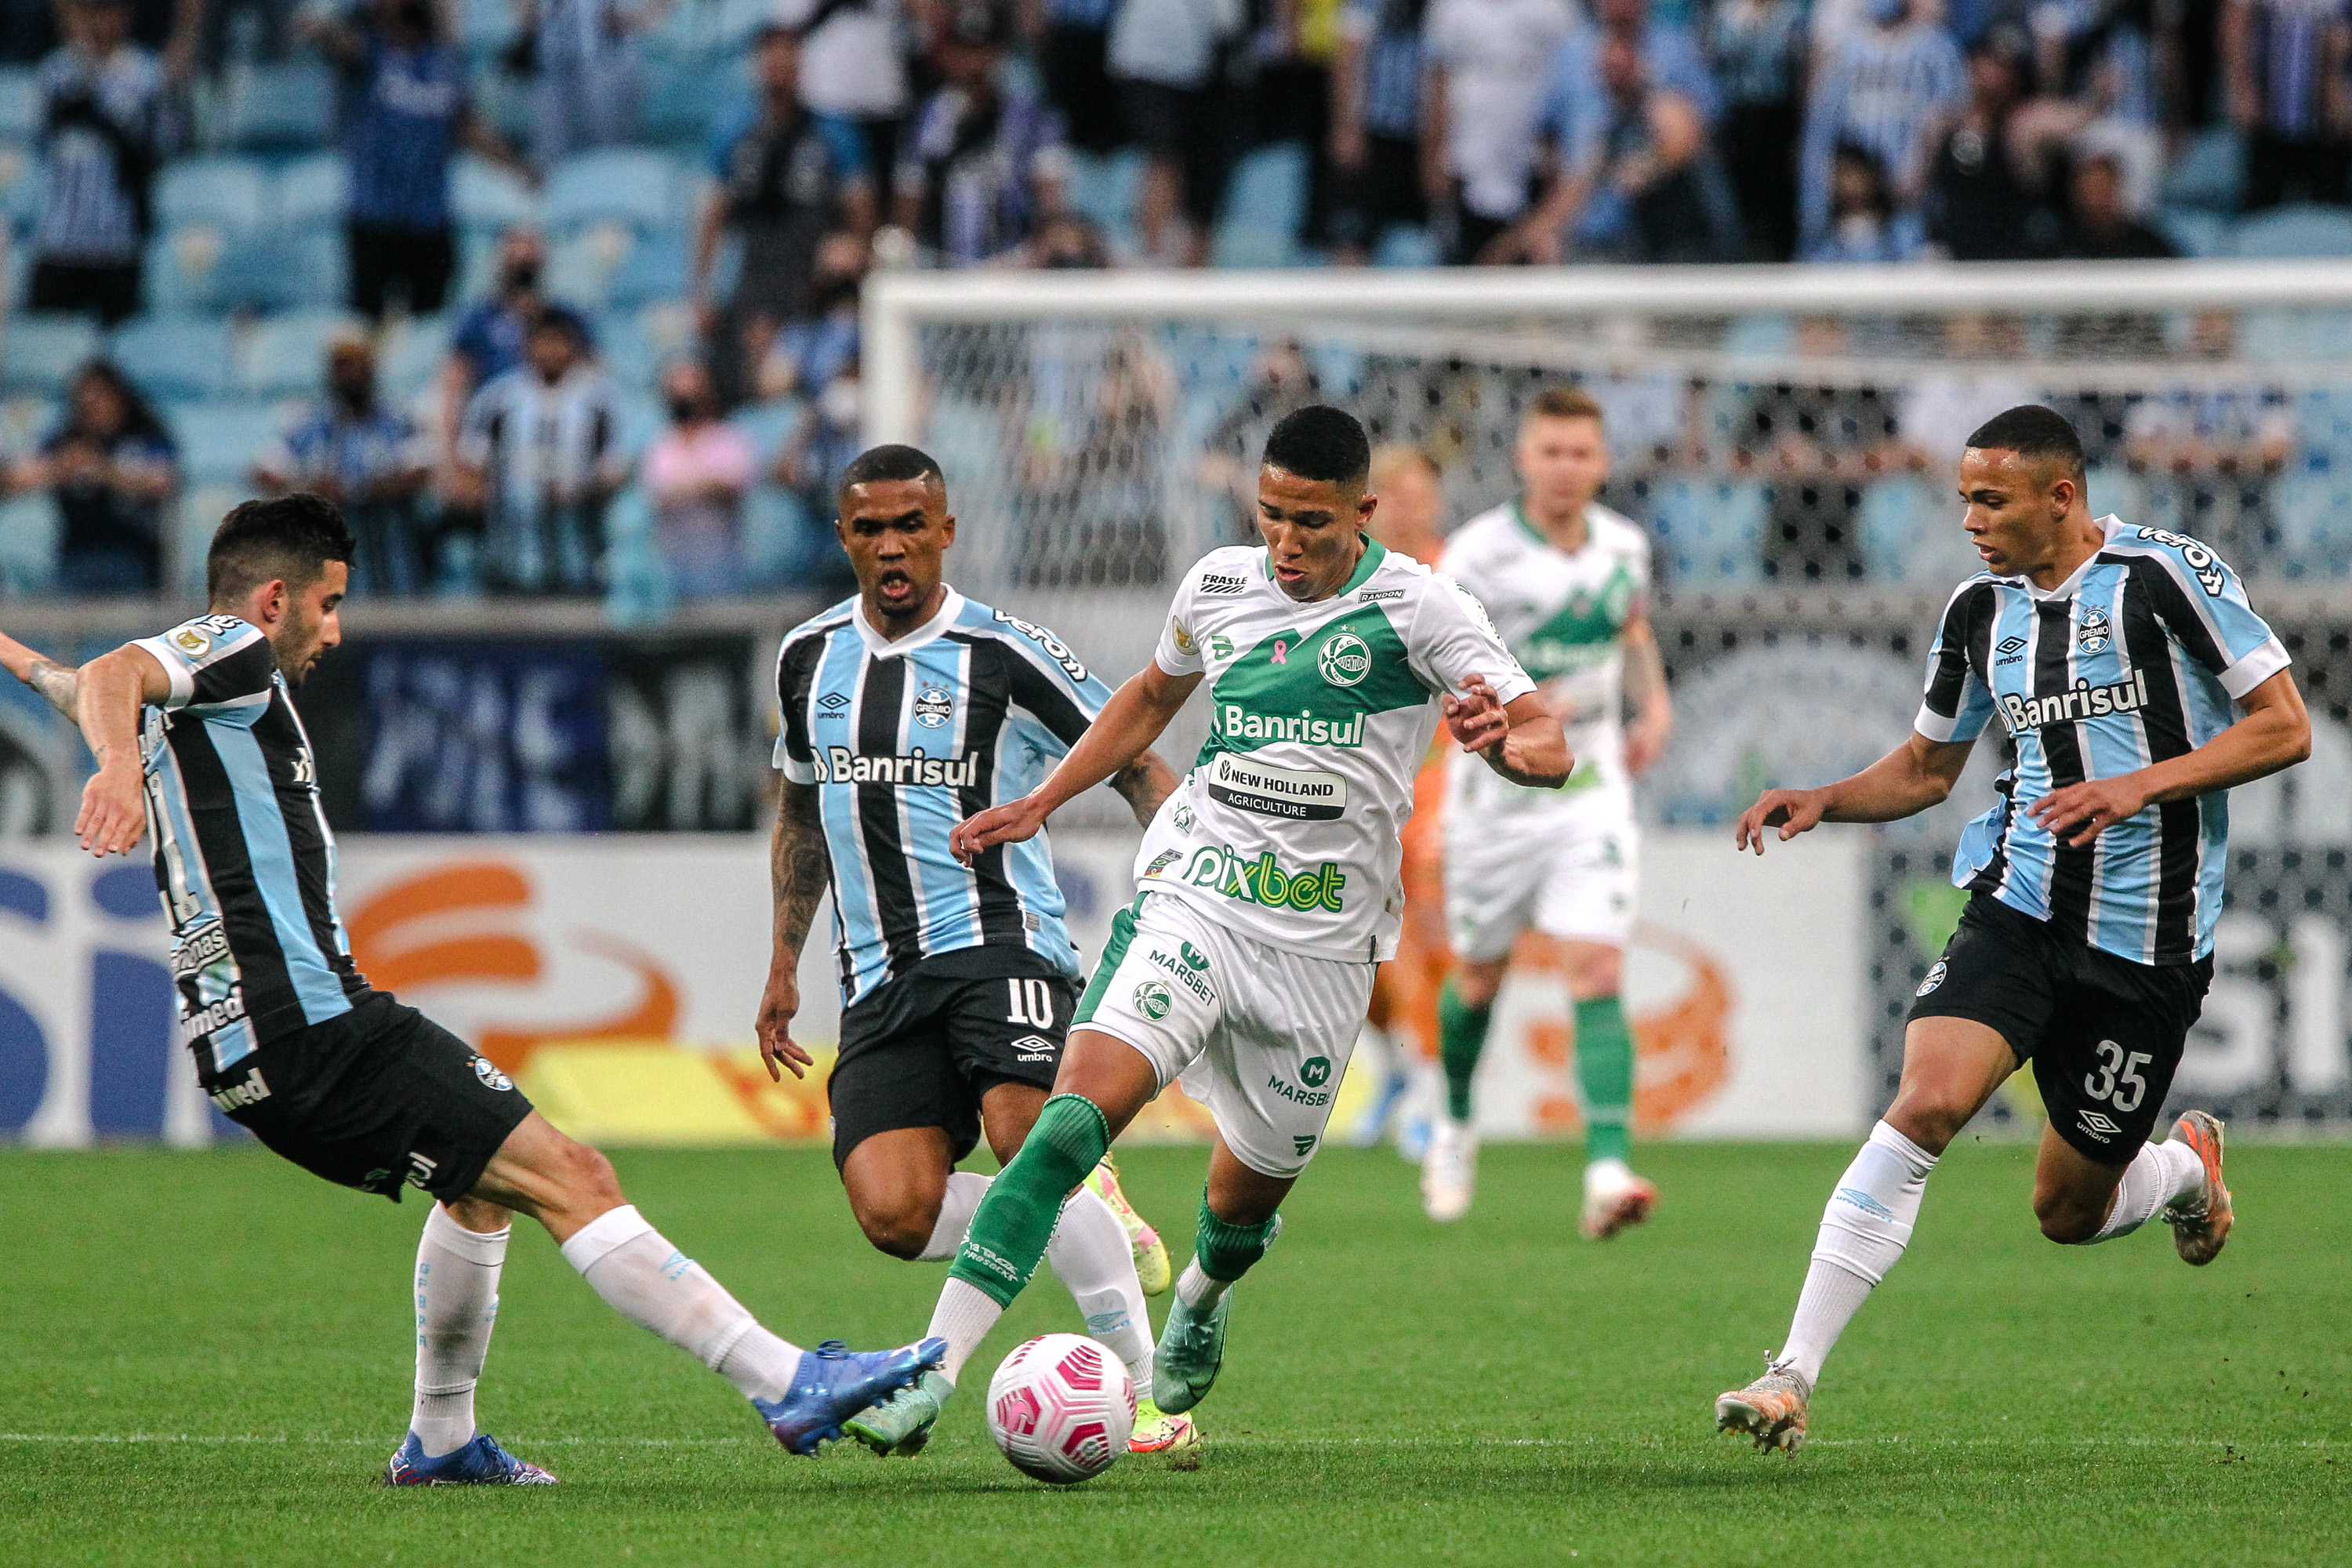 Ju luta até o final, reage, mas é superado pelo Grêmio em Porto Alegre